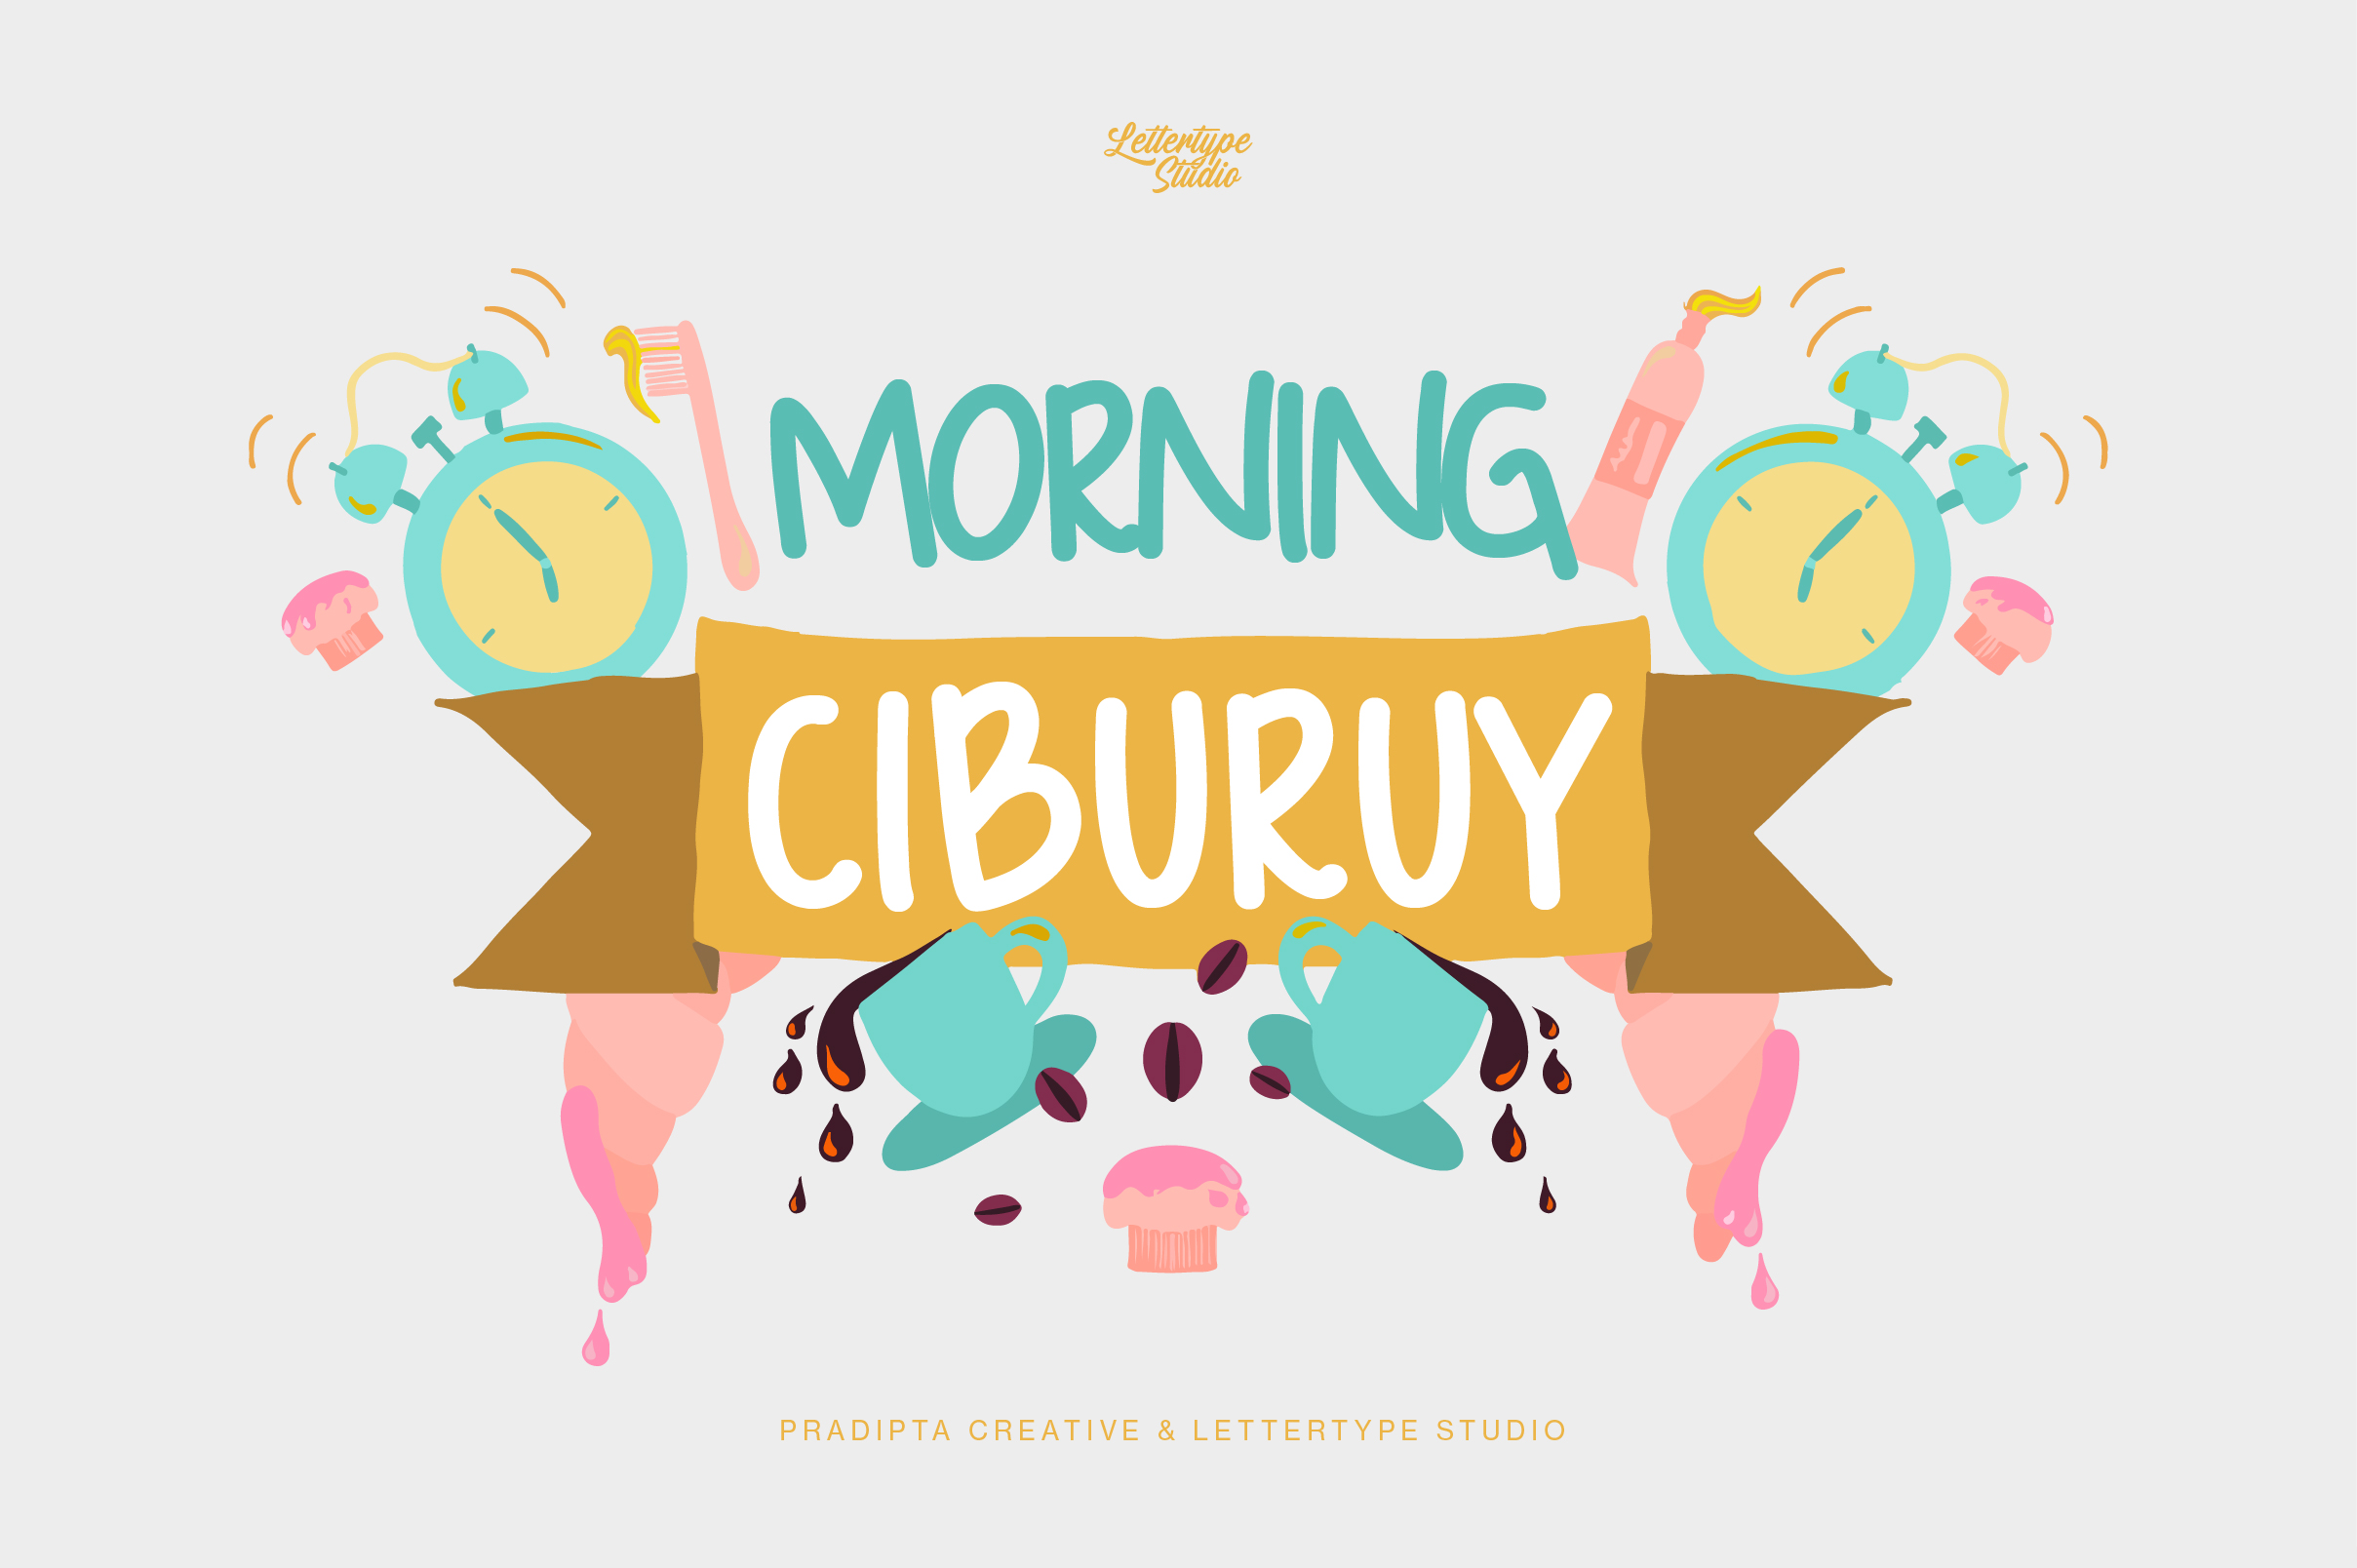 Morning Ciburuy